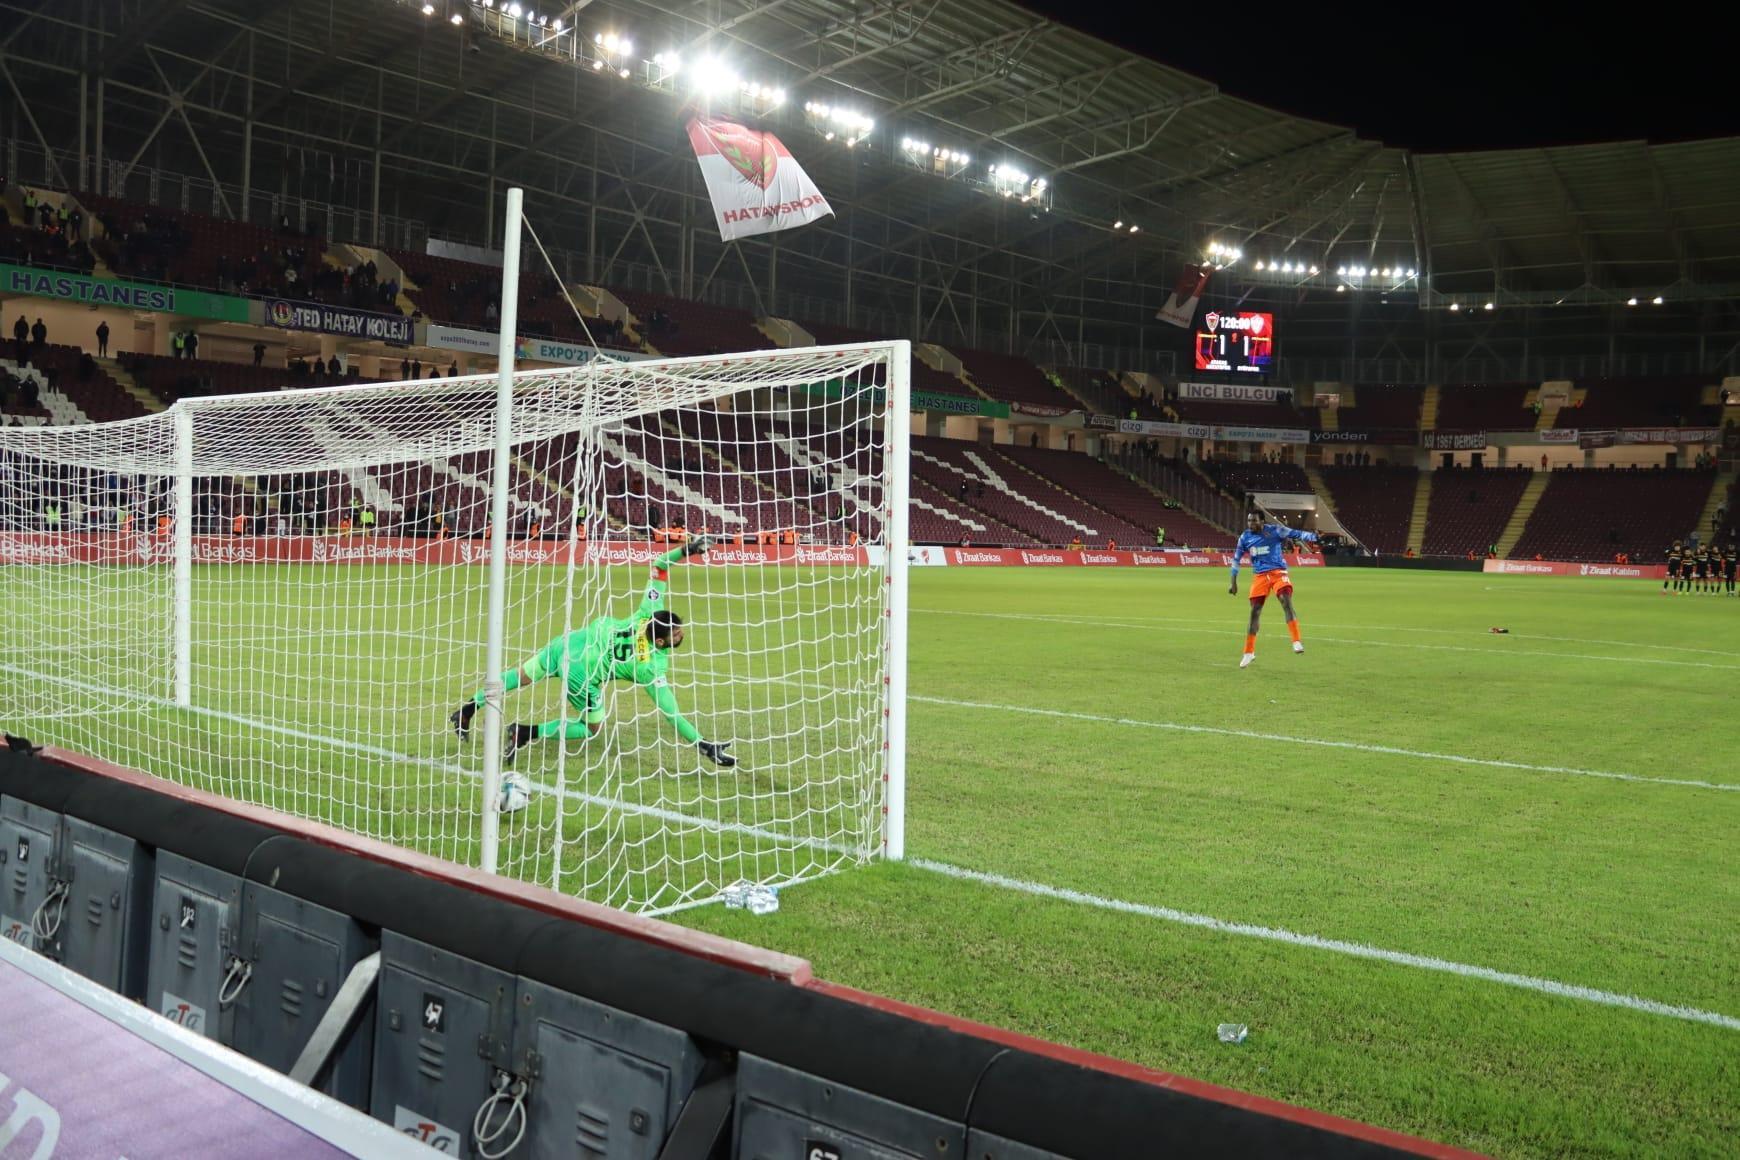 Golcü Diouf penaltı atışlarında kaleye geçti, Hatayspor kupada tur atladı